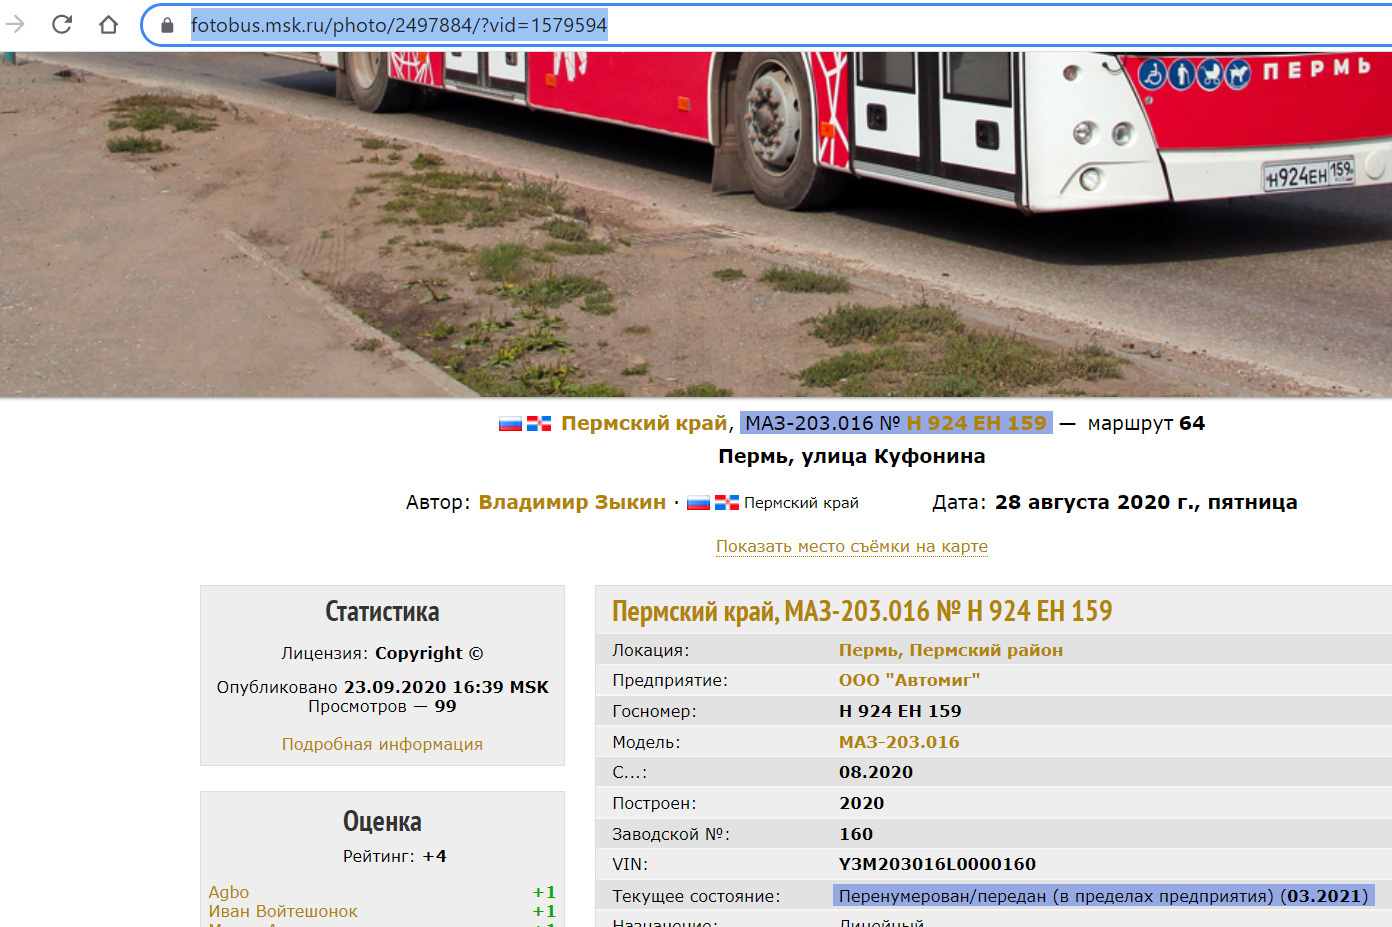 Автобус с госномером Н924ЕН 159 (один из поставленных <nobr class="_">МАЗ-20</nobr>3 в Самару) заметили на улицах Перми